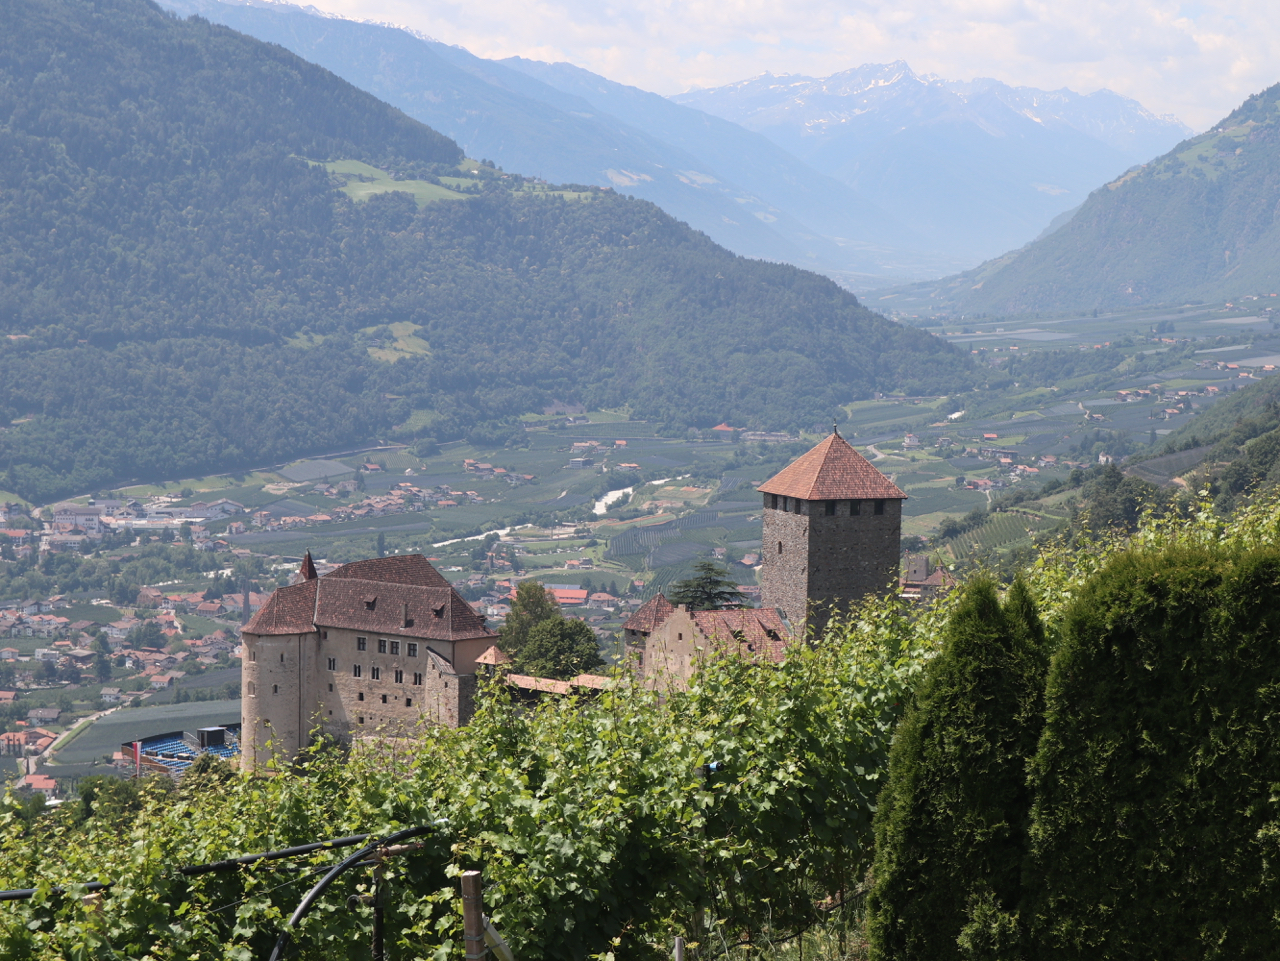 Blick auf Schloss Tirol